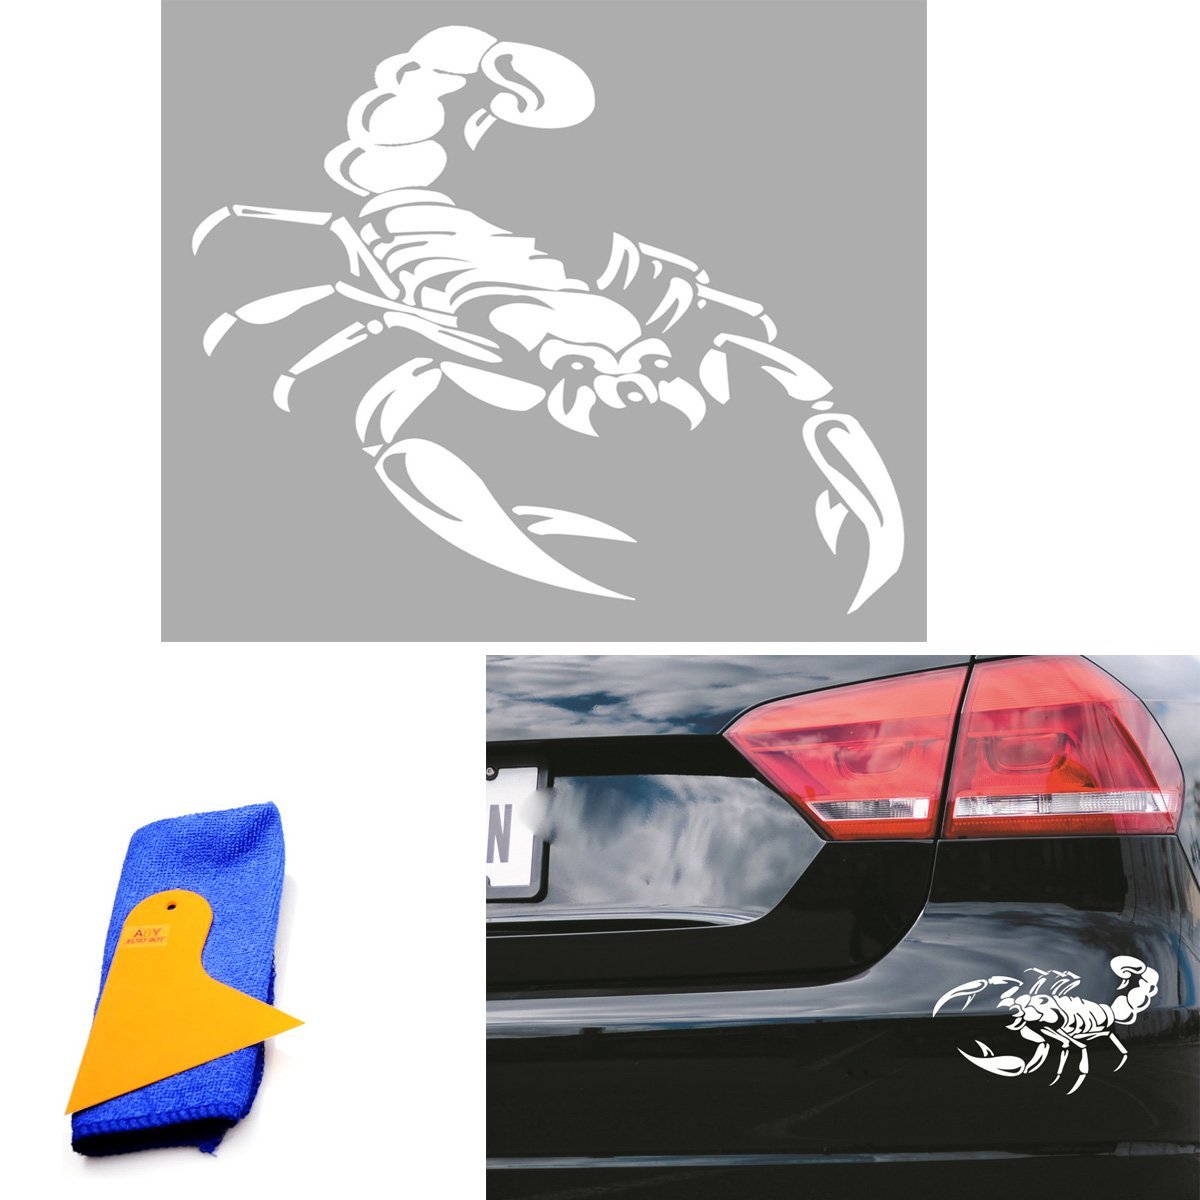 ABy 1 x Skorpion Auto ufkleber für Auto Van Fenster Motorhaube Helm, Auto-Dach, Wände, Autoreifen-Abdeckung und mehr -11.8"x 9.1"(Weiß) von ABy